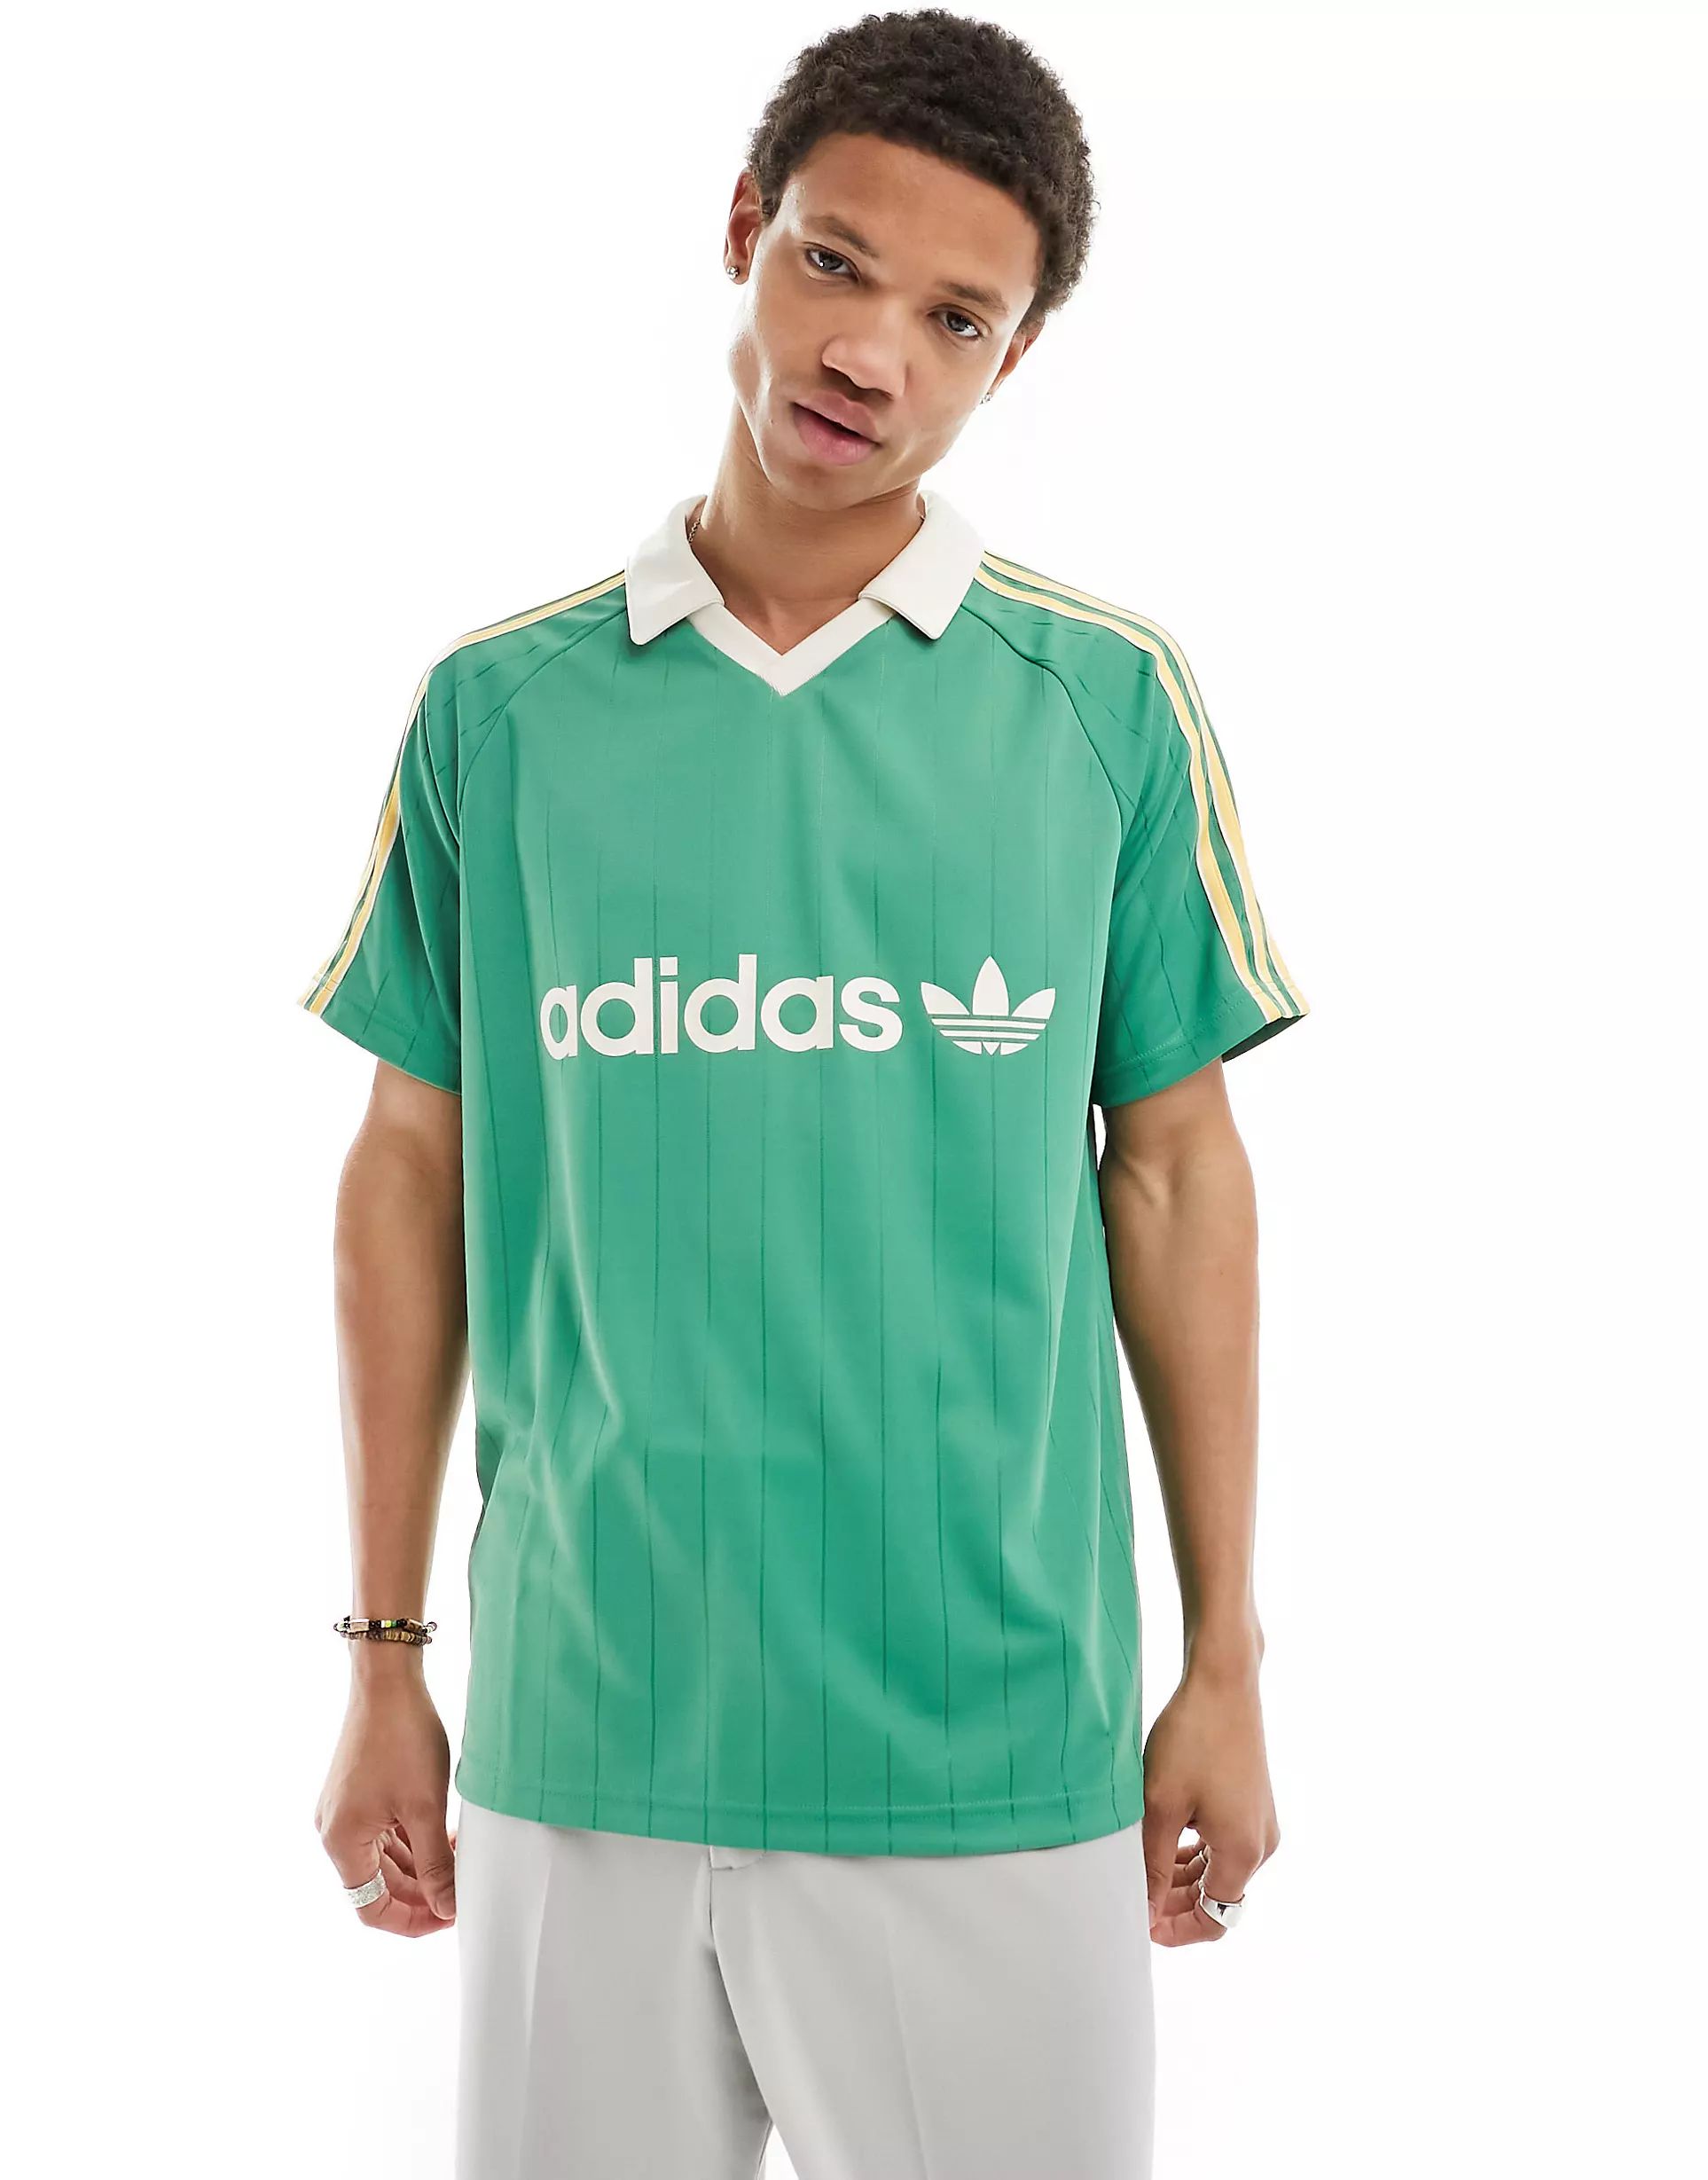 adidas Originals retro polo shirt in green | ASOS | ASOS (Global)